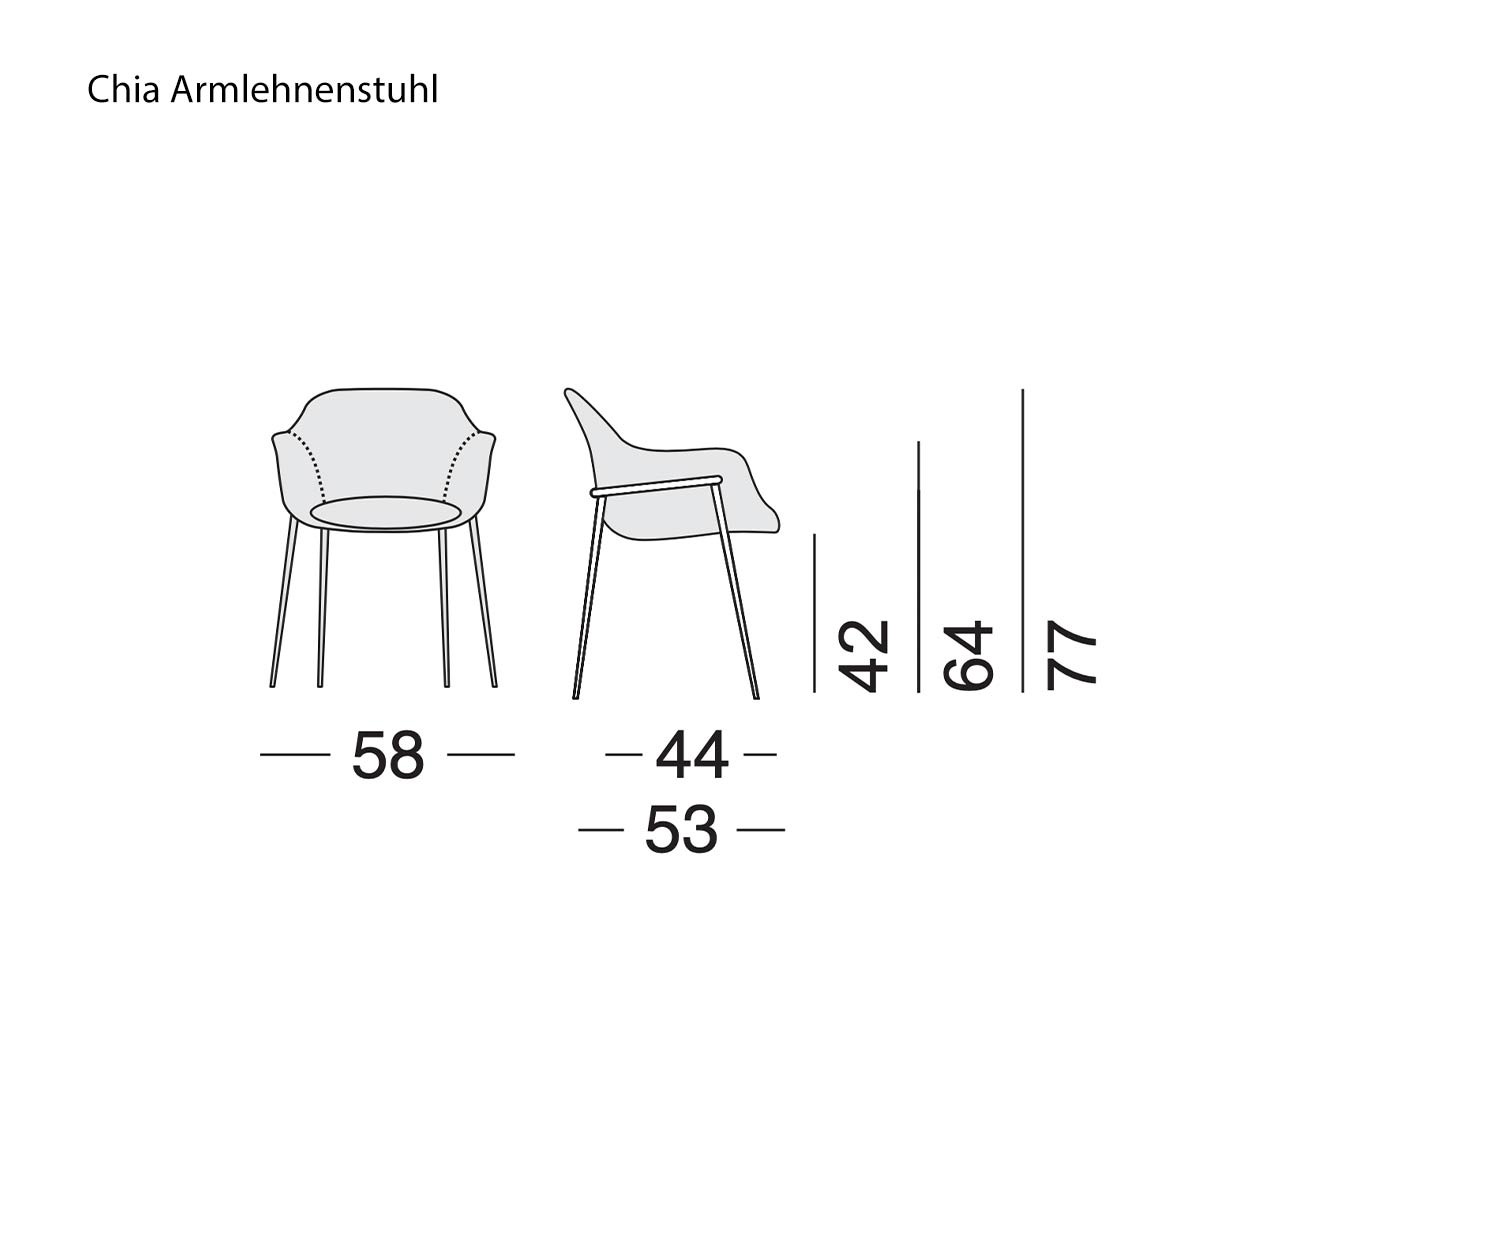 Schets Afmetingen Maten Design fauteuil Chia